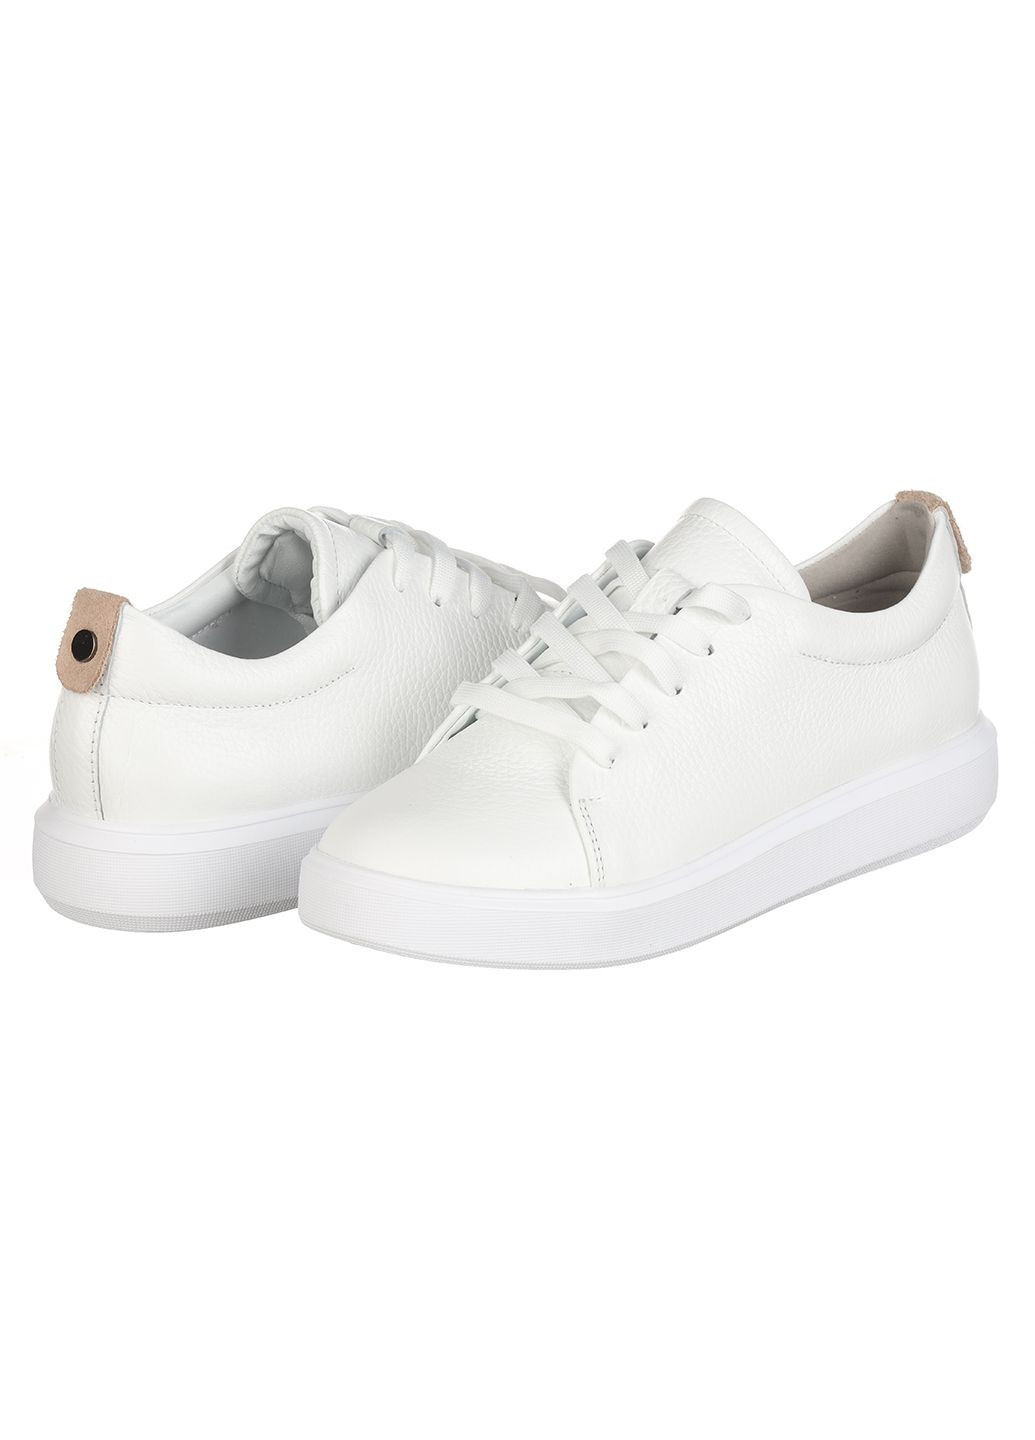 Білі осінні жіночі кросівки зі шкіри 0131-2314 Rispetto